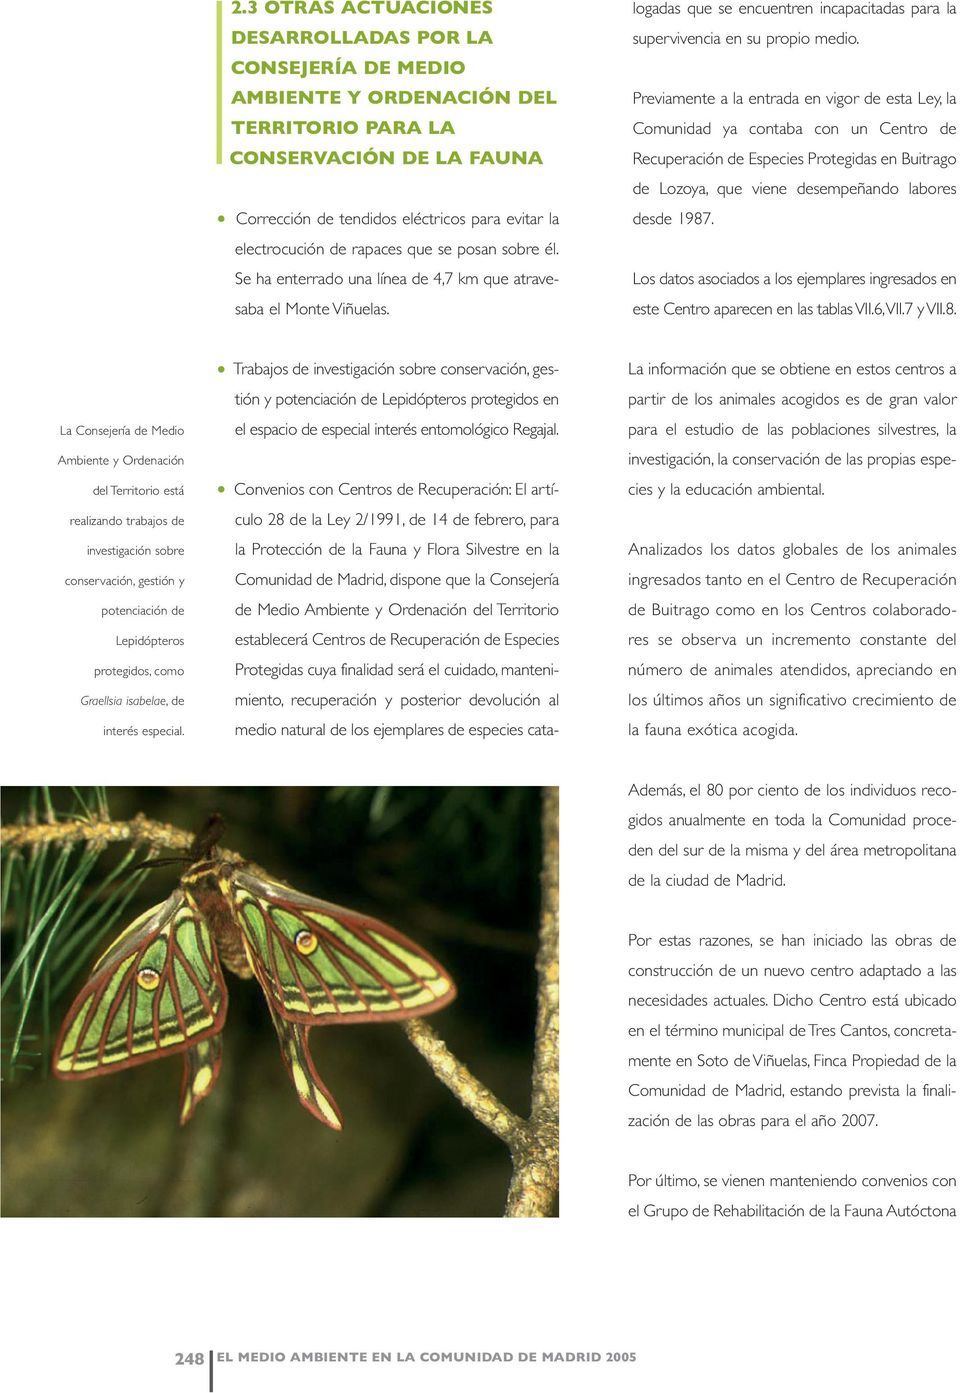 Convenios con Centros de Recuperación: El artículo 28 de la Ley 2/1991, de 14 de febrero, para la Protección de la Fauna y Flora Silvestre en la Comunidad de Madrid, dispone que la Consejería de